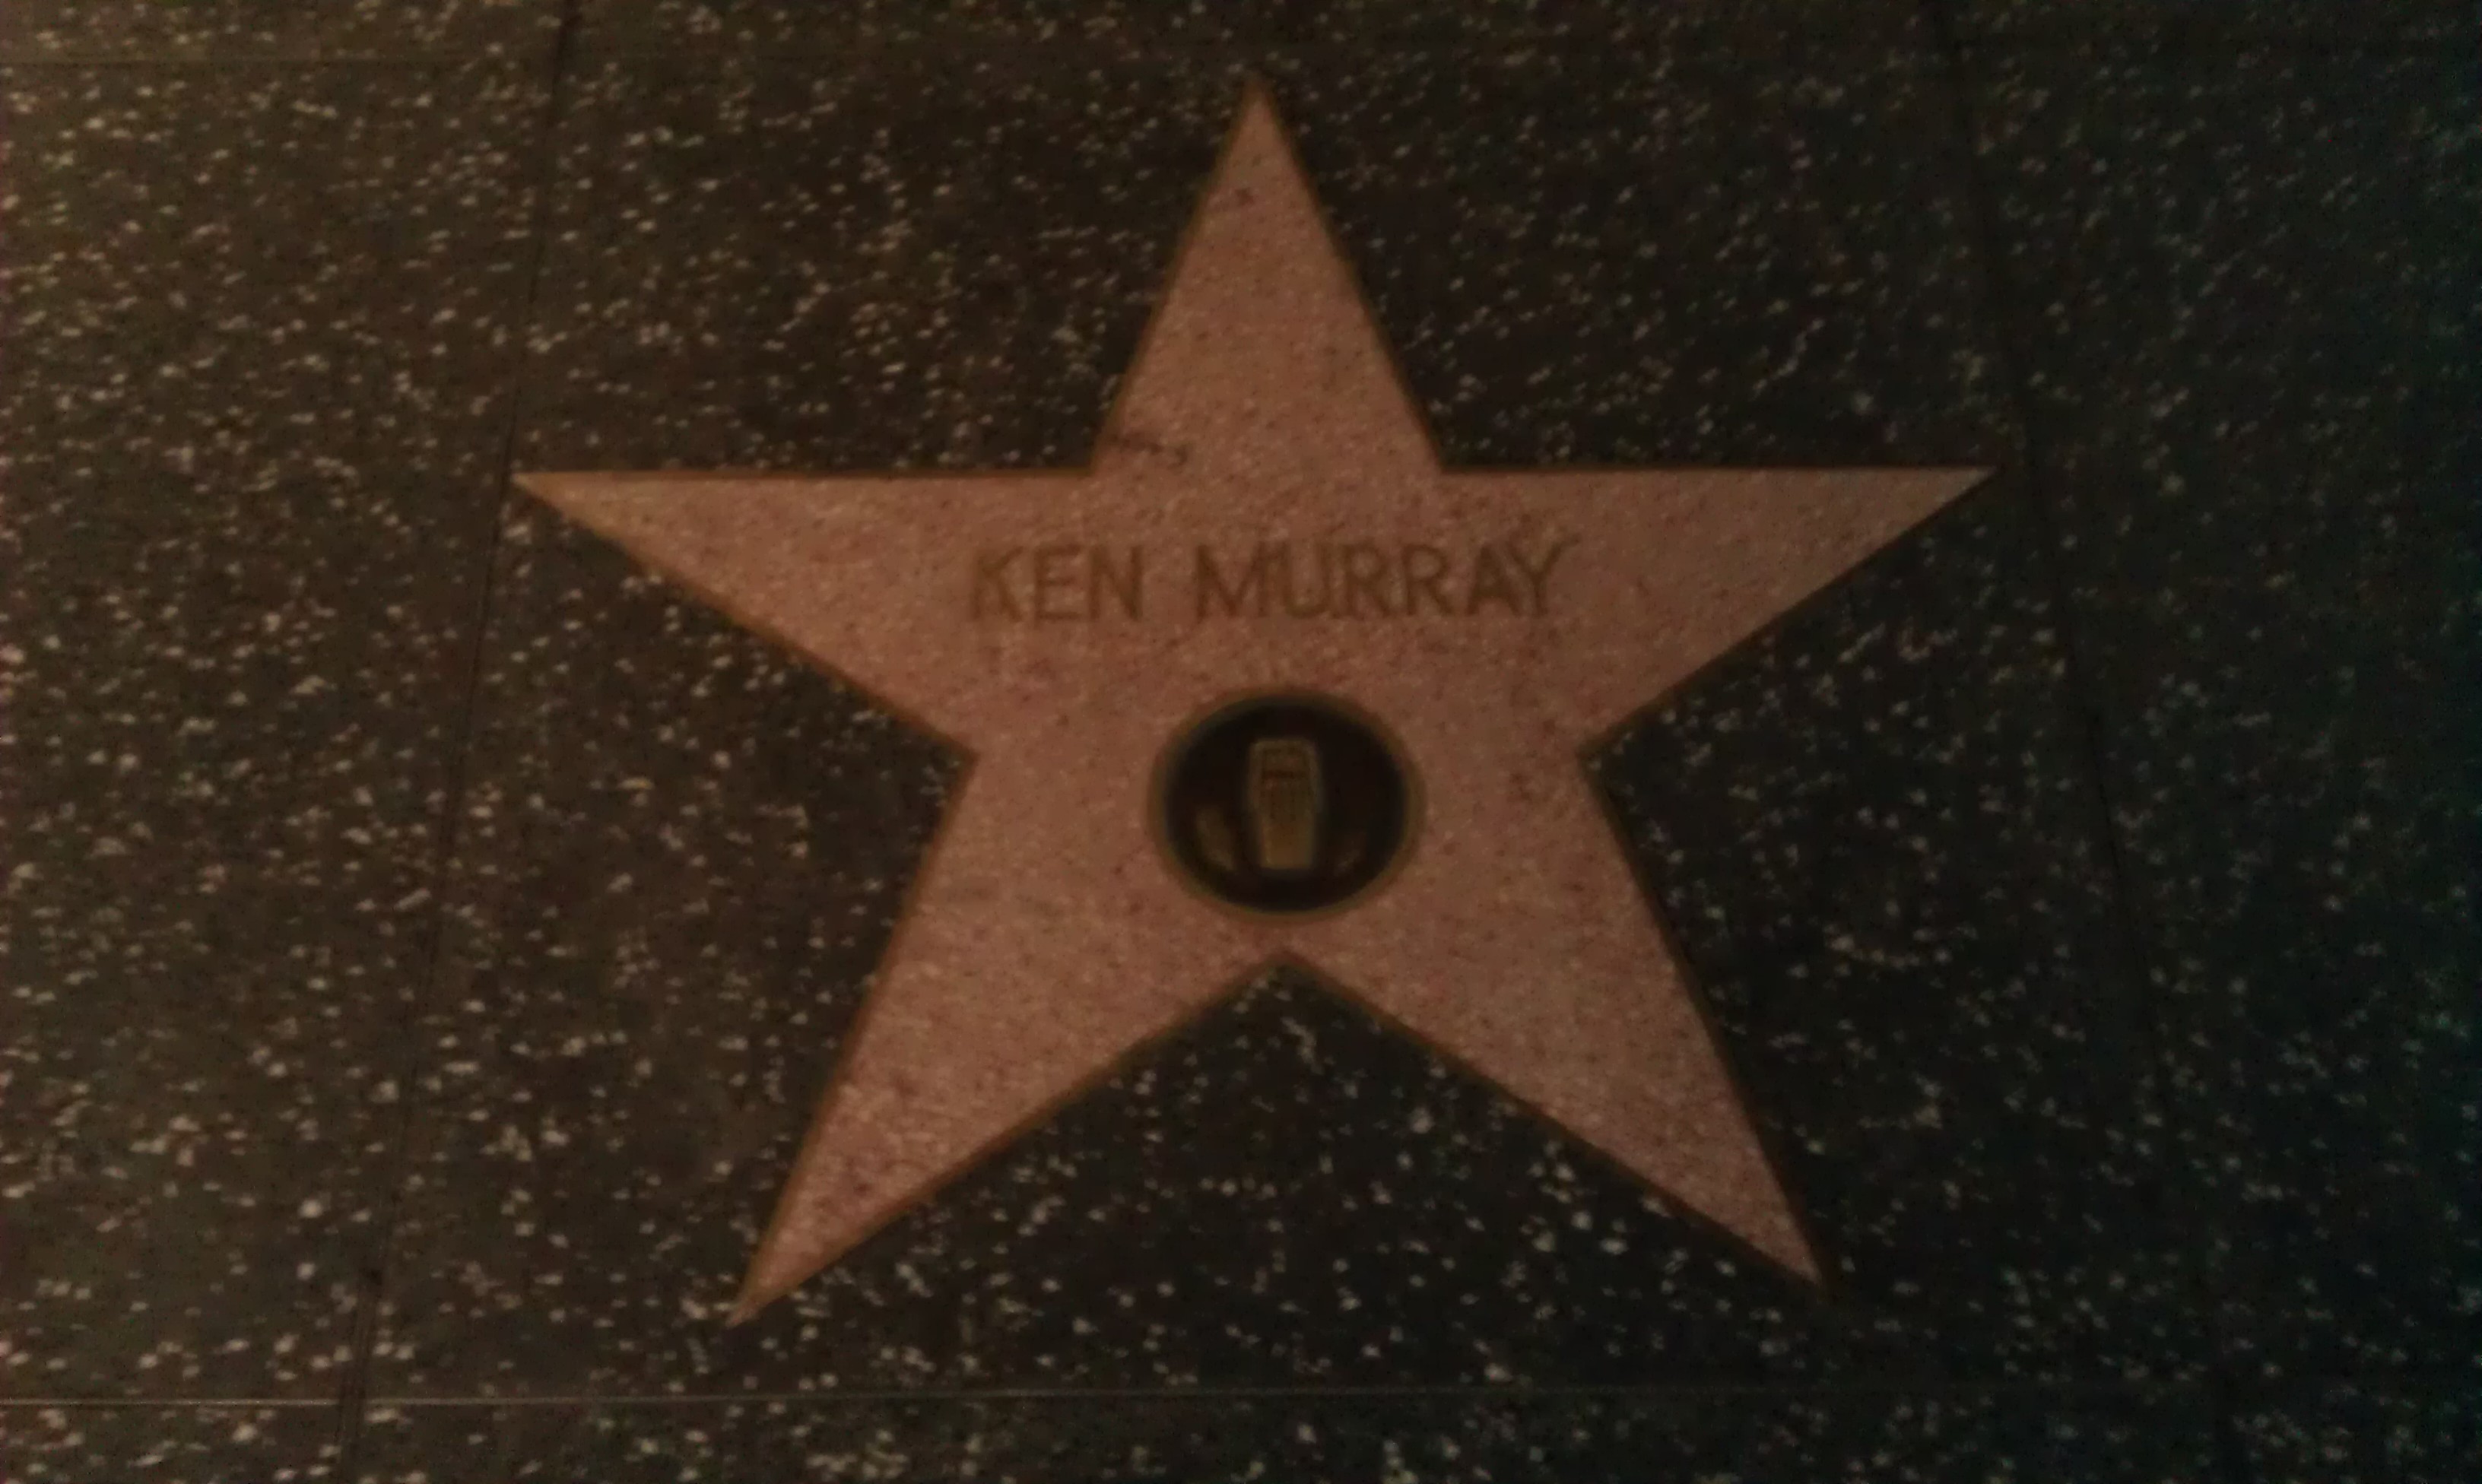 ken-murray-entertainer-pictures